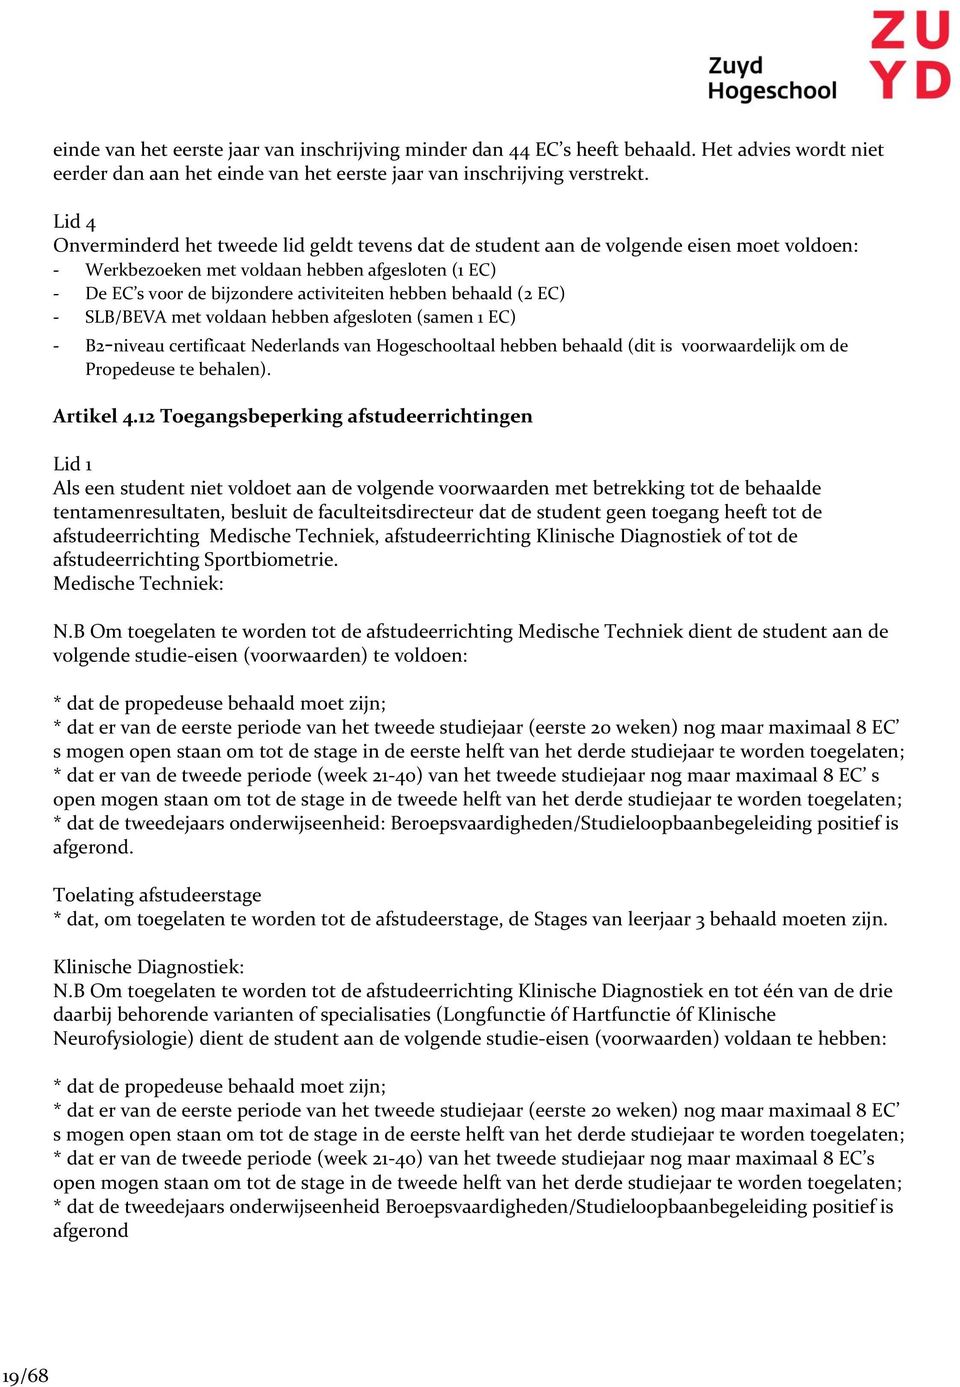 behaald (2 EC) - SLB/BEVA met voldaan hebben afgesloten (samen 1 EC) - B2-niveau certificaat Nederlands van Hogeschooltaal hebben behaald (dit is voorwaardelijk om de Propedeuse te behalen).